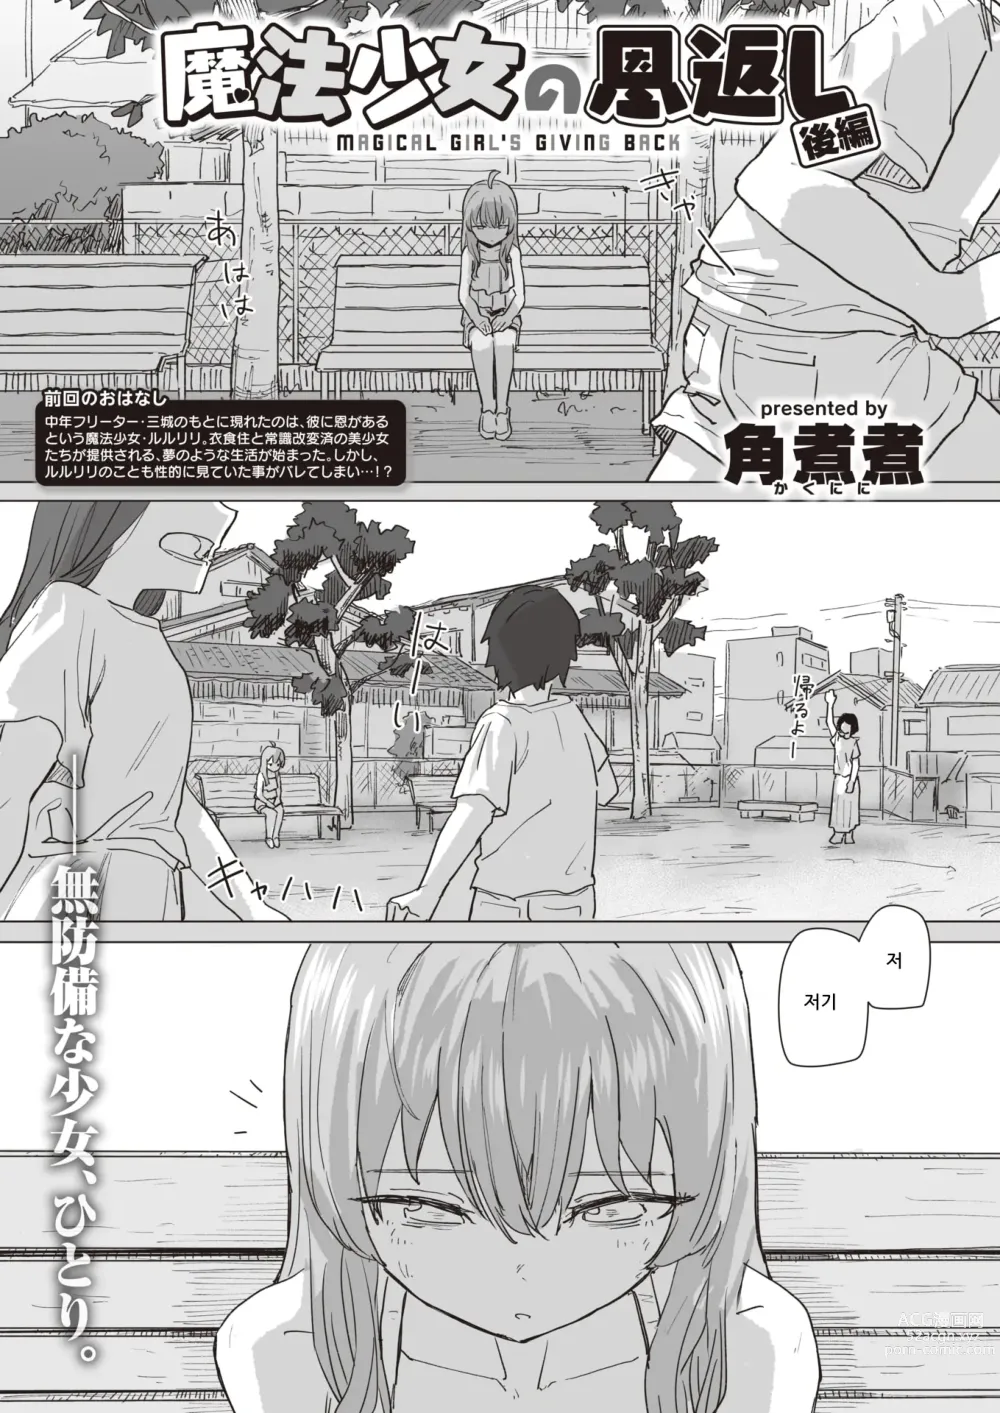 Page 1 of manga 마법소녀의 은혜갚기 후편